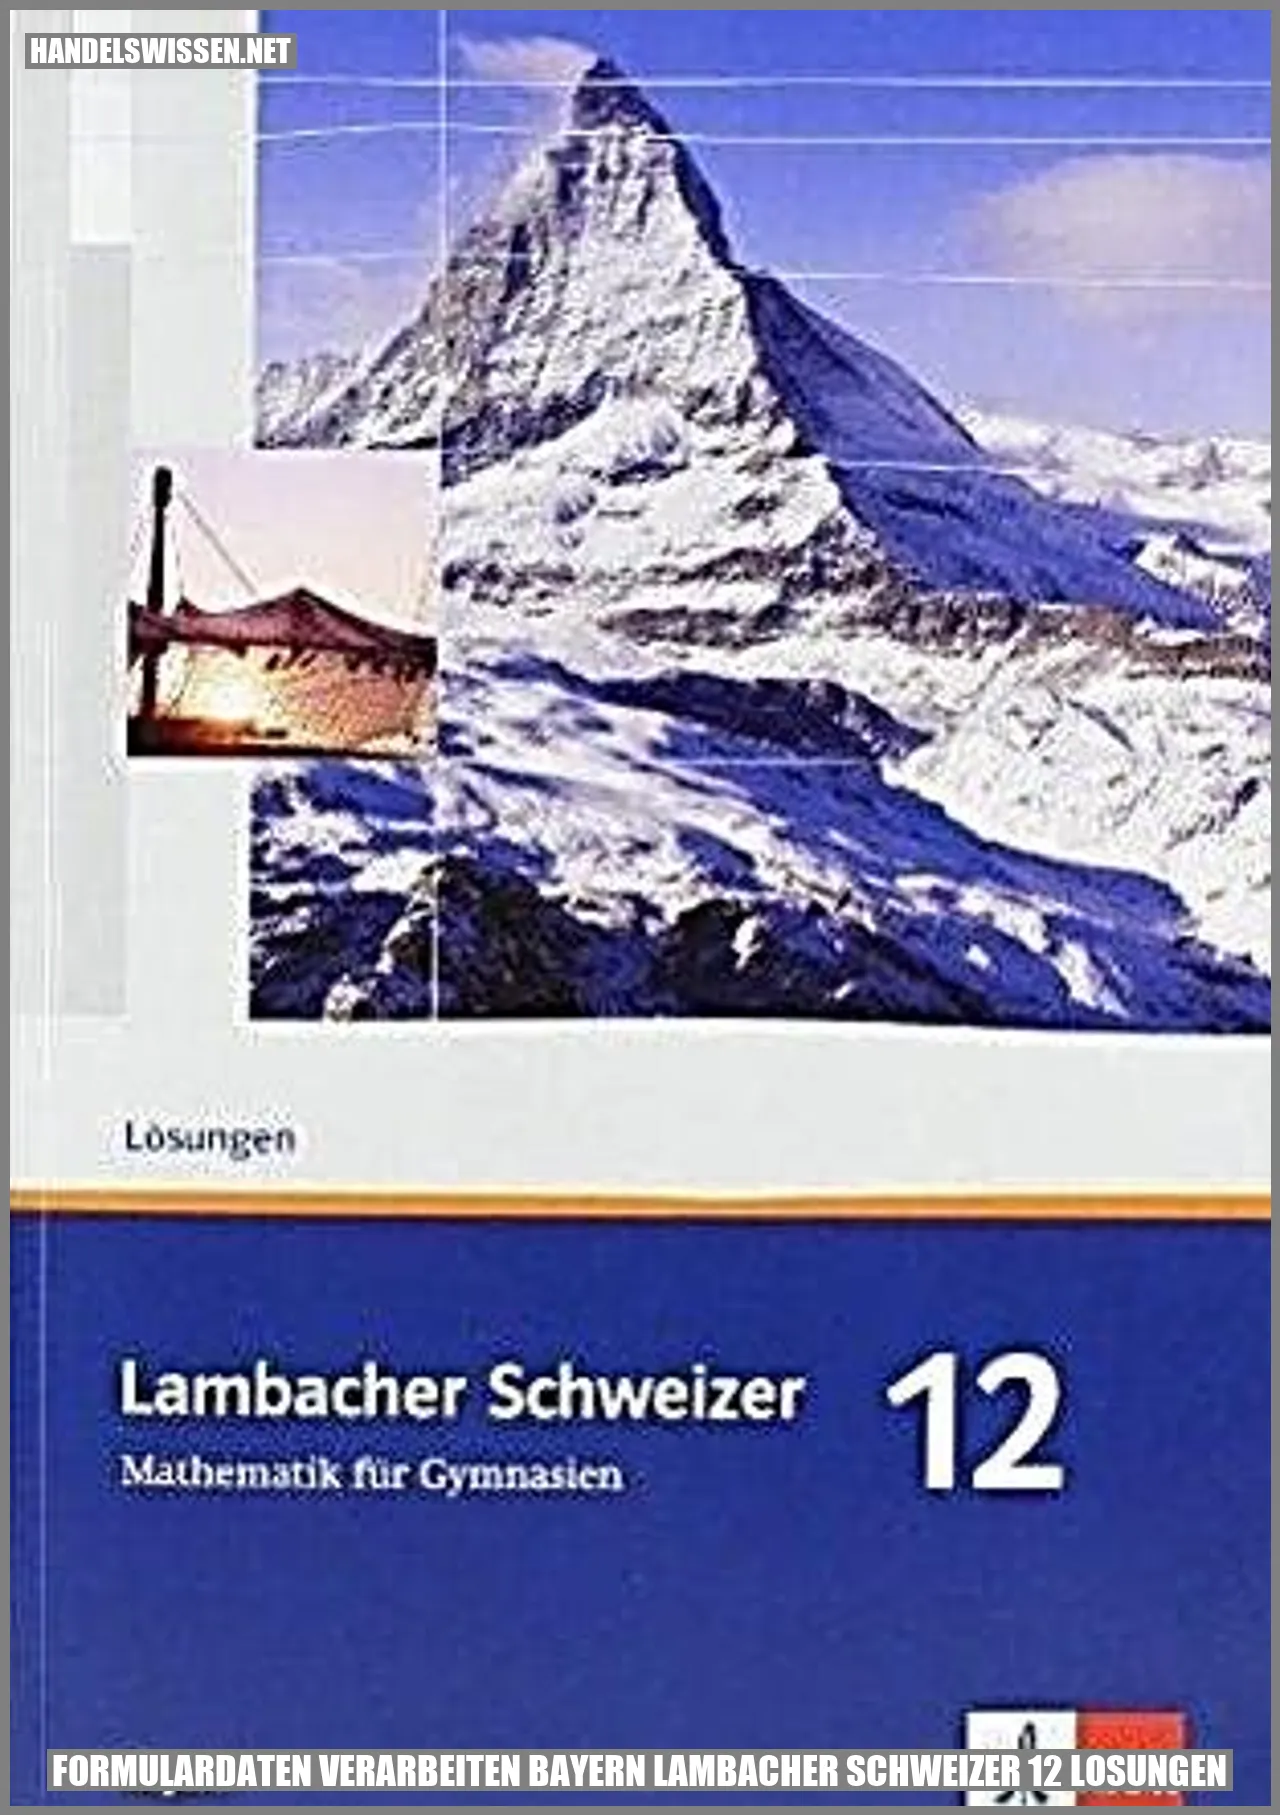 Formulardaten verarbeiten Bayern Lambacher Schweizer 12 Lösungen